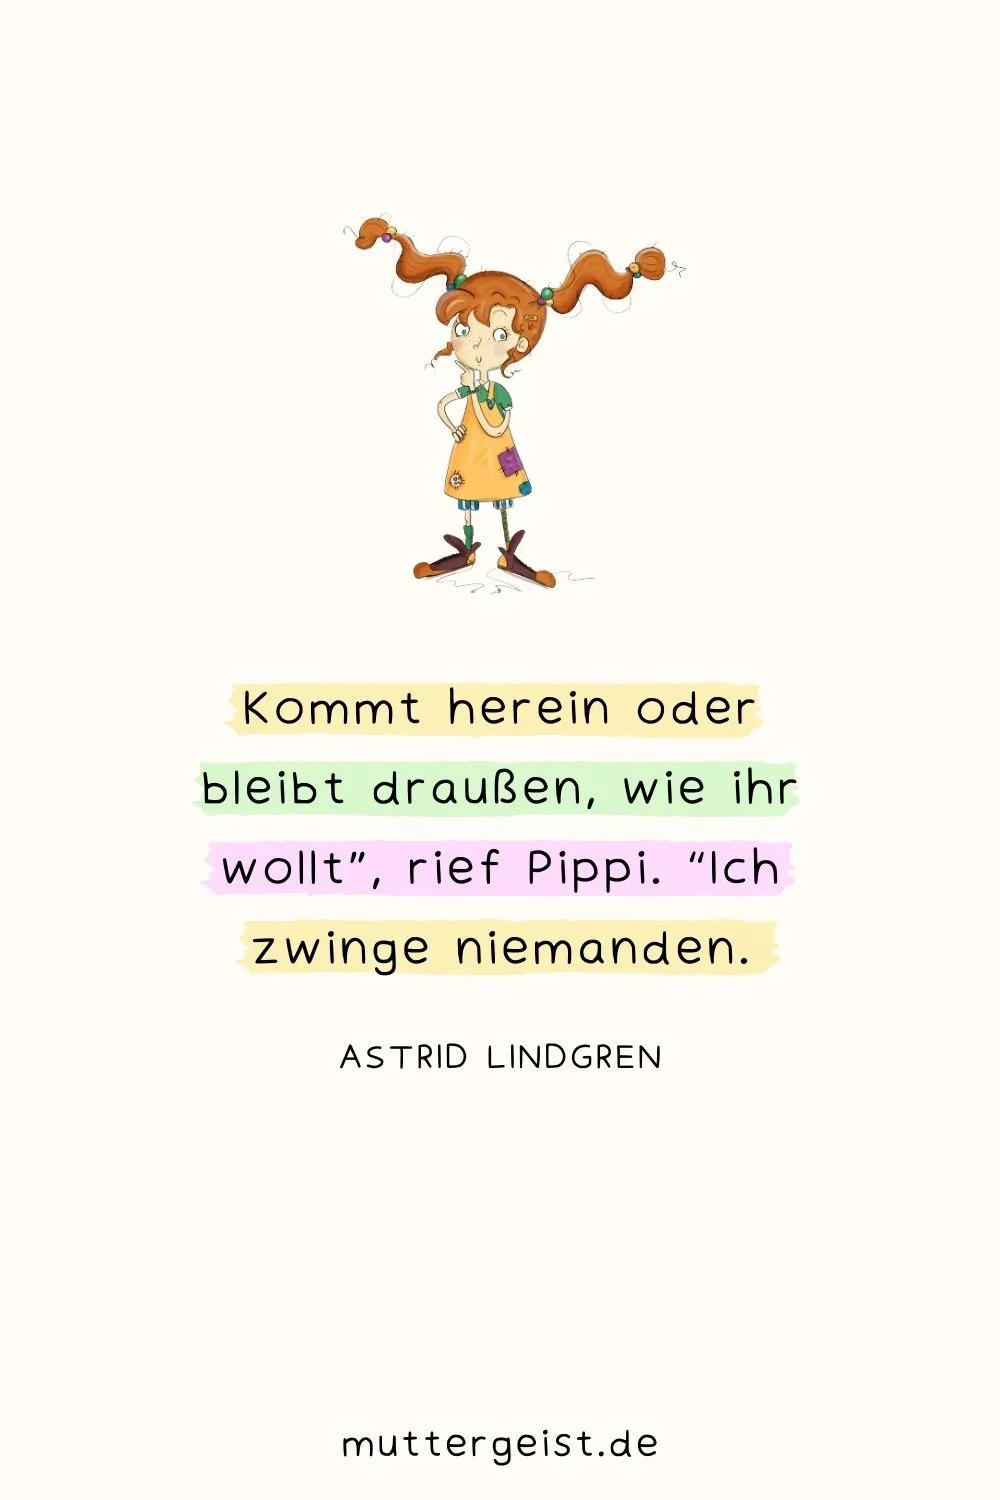 Astrid Lindgrens Satz aus Kapitel 8 (Pippi wird von Dieben besucht)